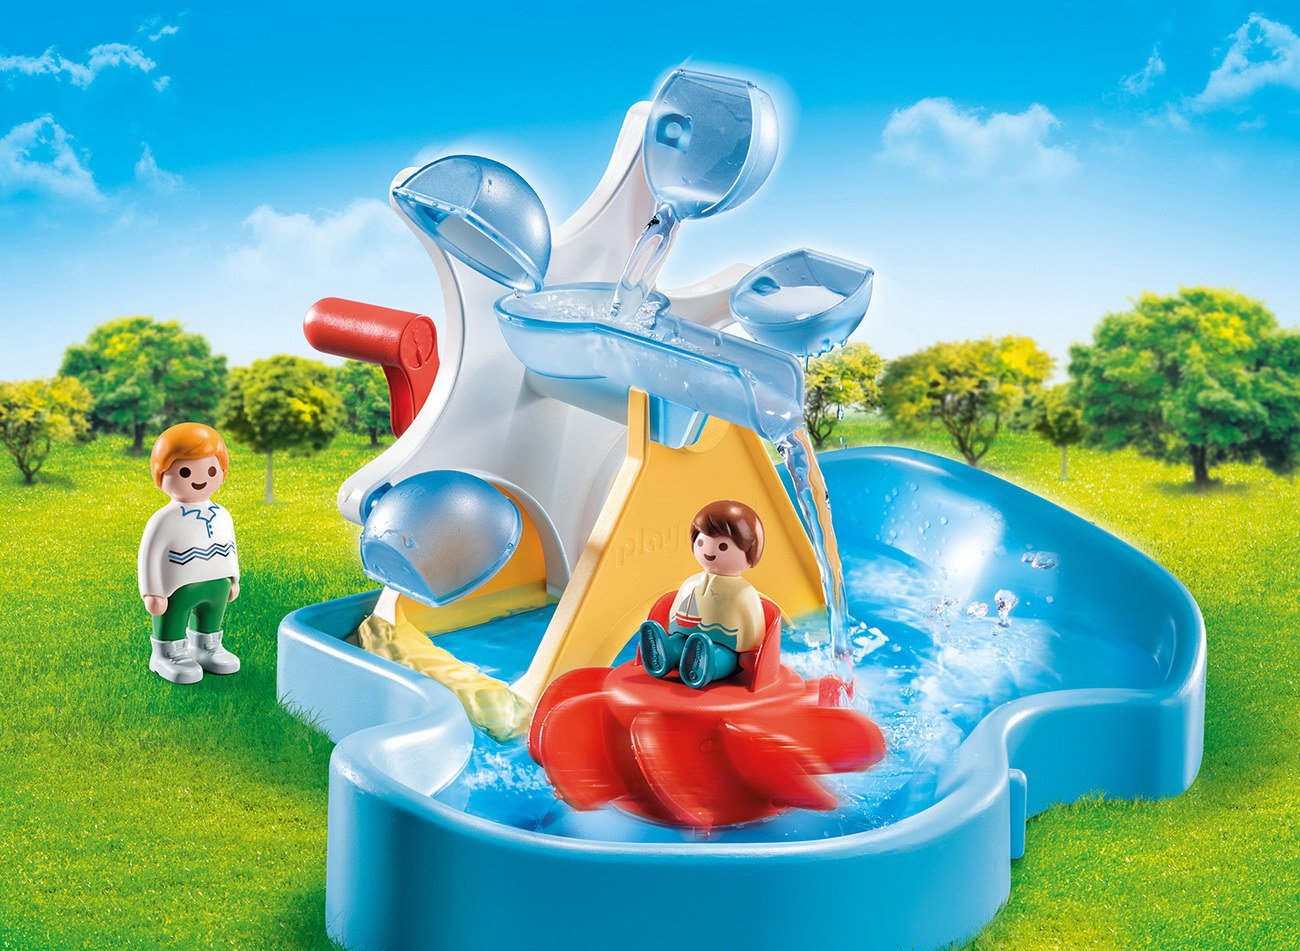 Playmobil 70268 - Wasserrad mit Karussell - 1.2.3 / Aqua